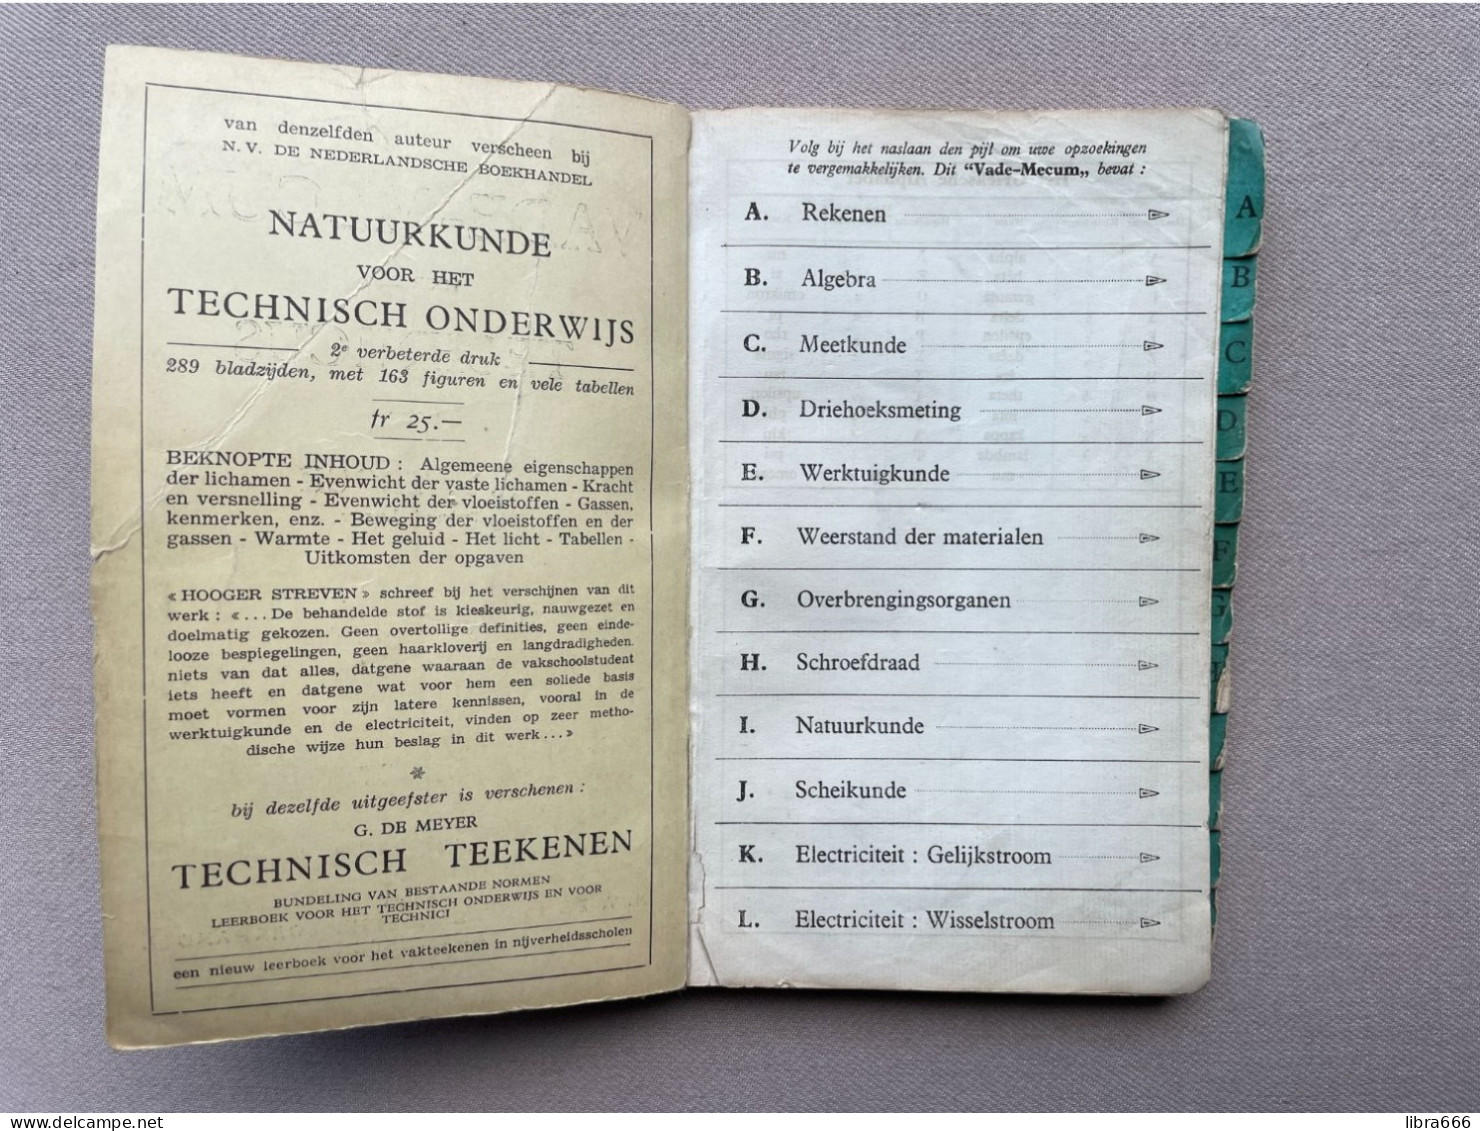 VADE-MECUM Voor Den TECHNICUS - A.F. TROCH 1942 - N.V. De Nederlandsche Boekhandel Antwerpen - 180 Pp. - 19,5 X 13 Cm. - Prácticos